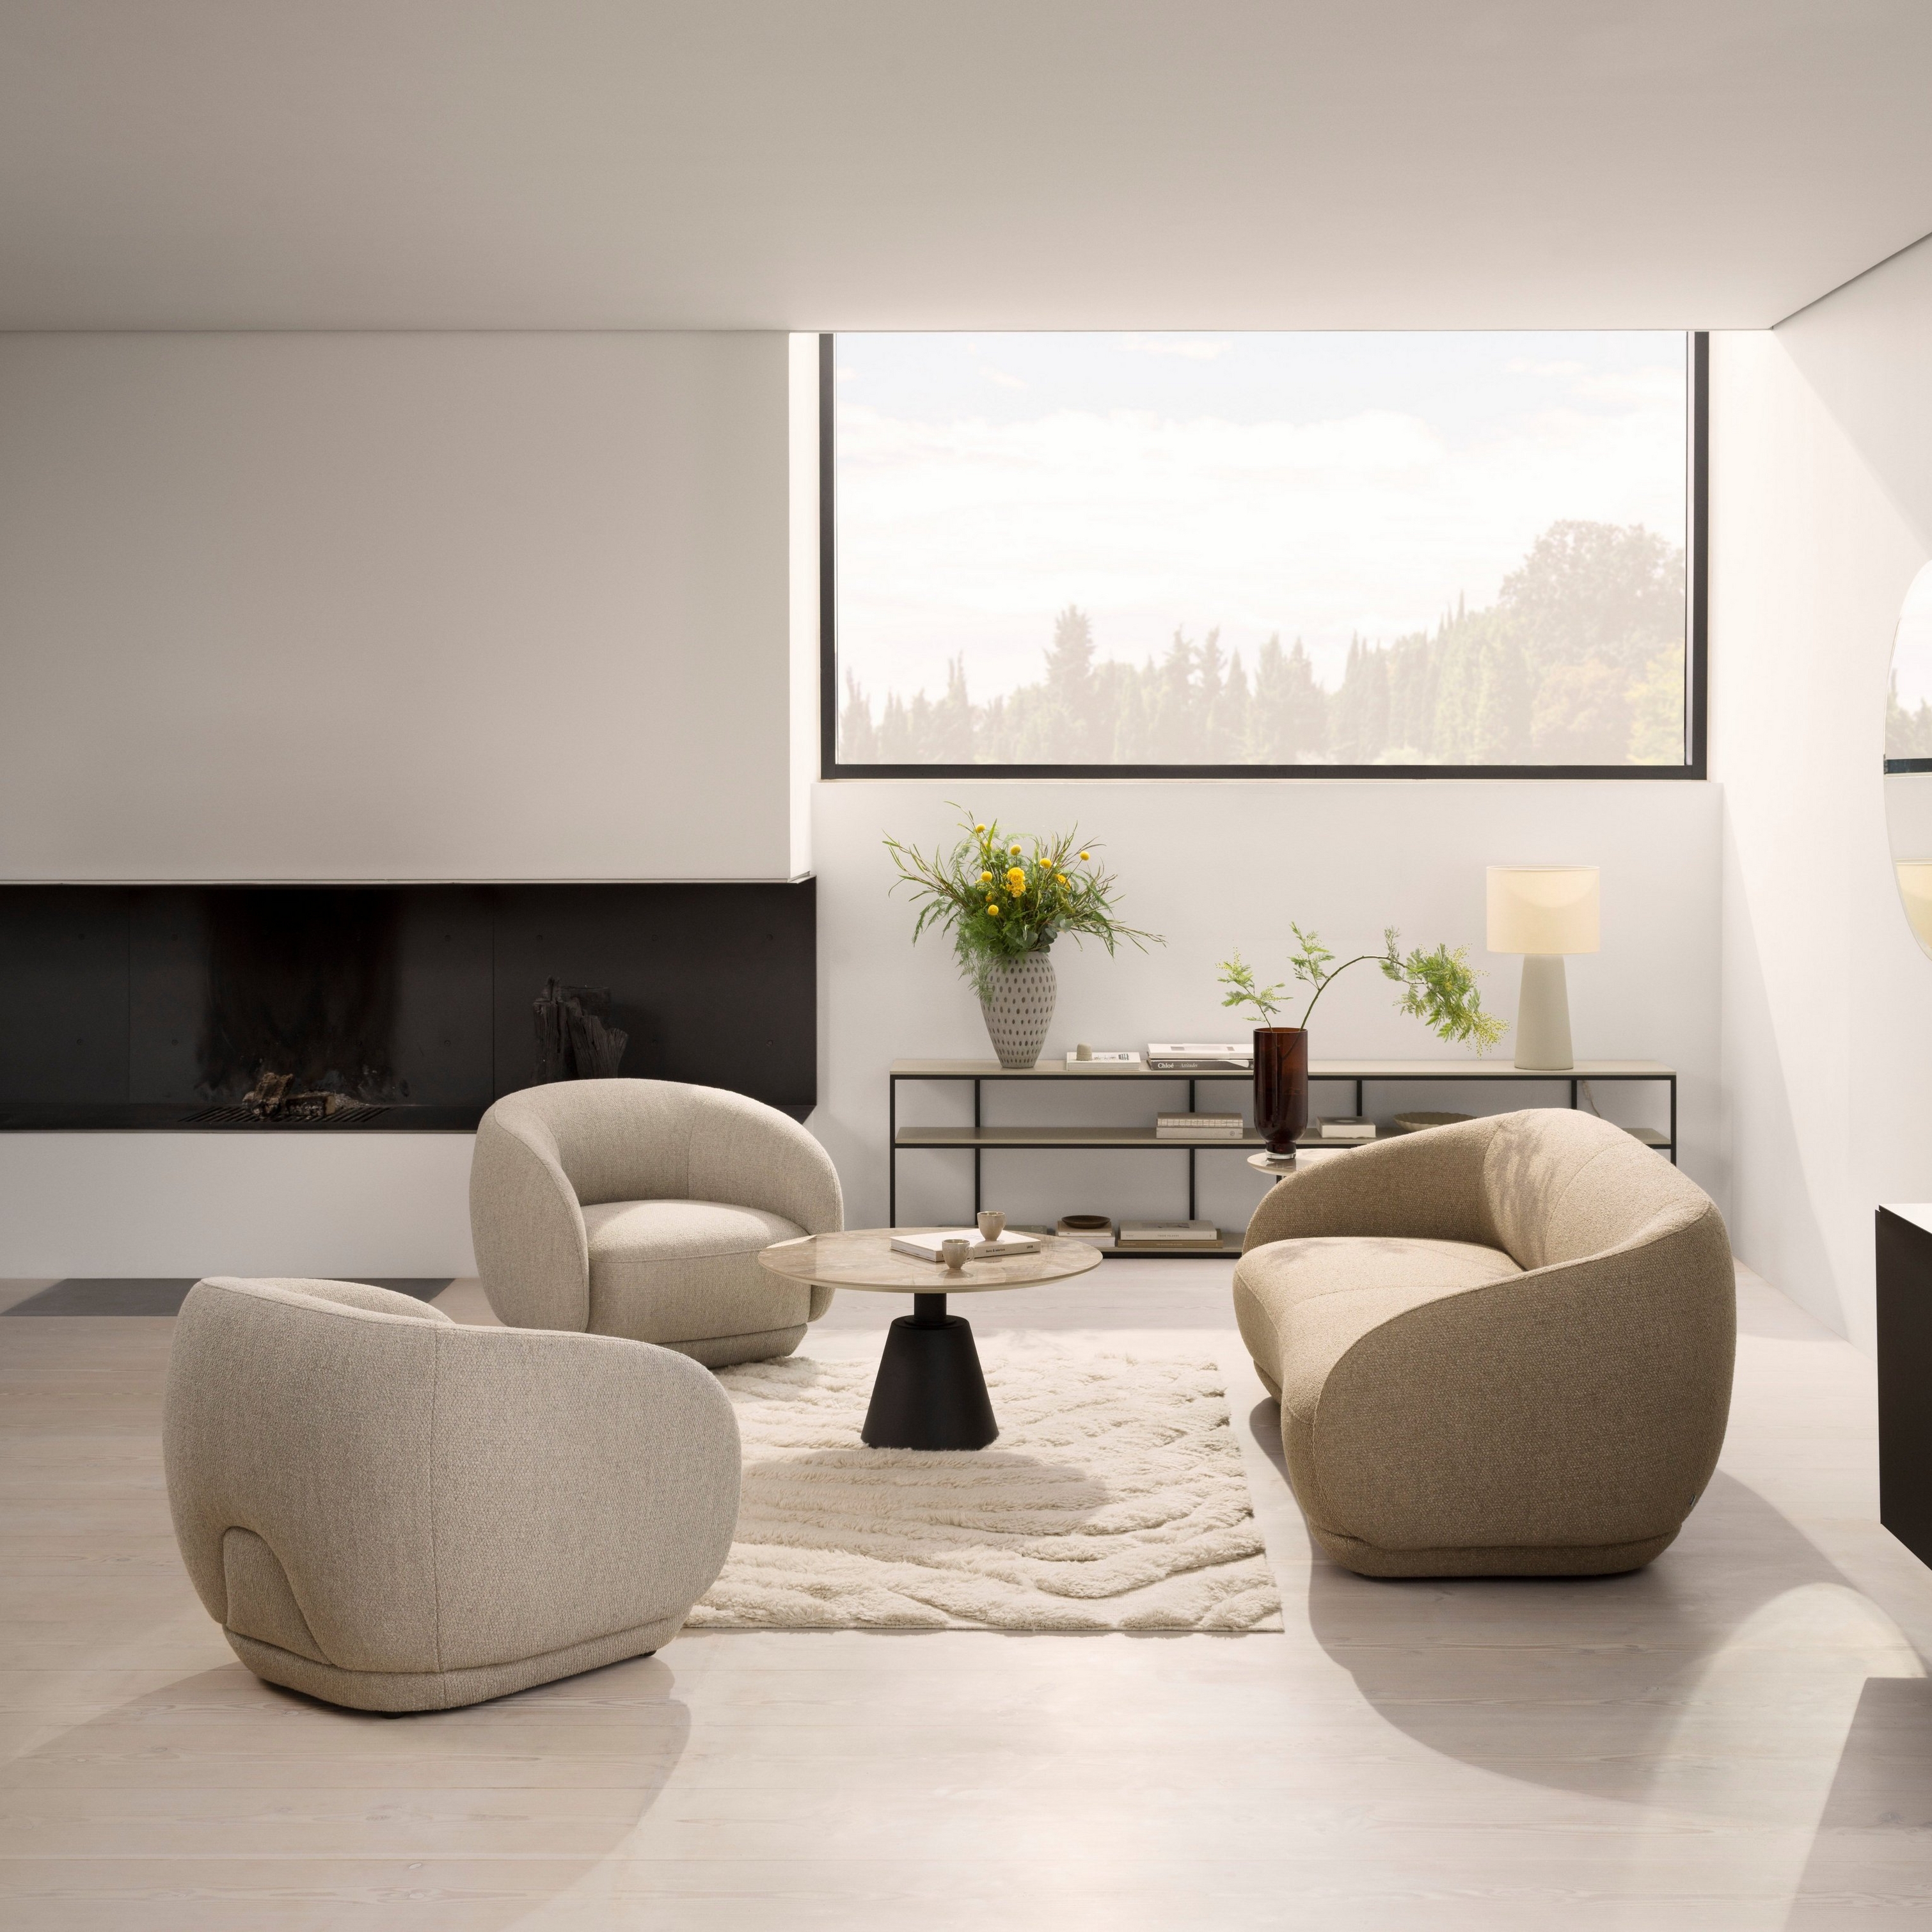 Cozy yet contemporary living room featuring the Bolzano sofa and the Bolzano armchair